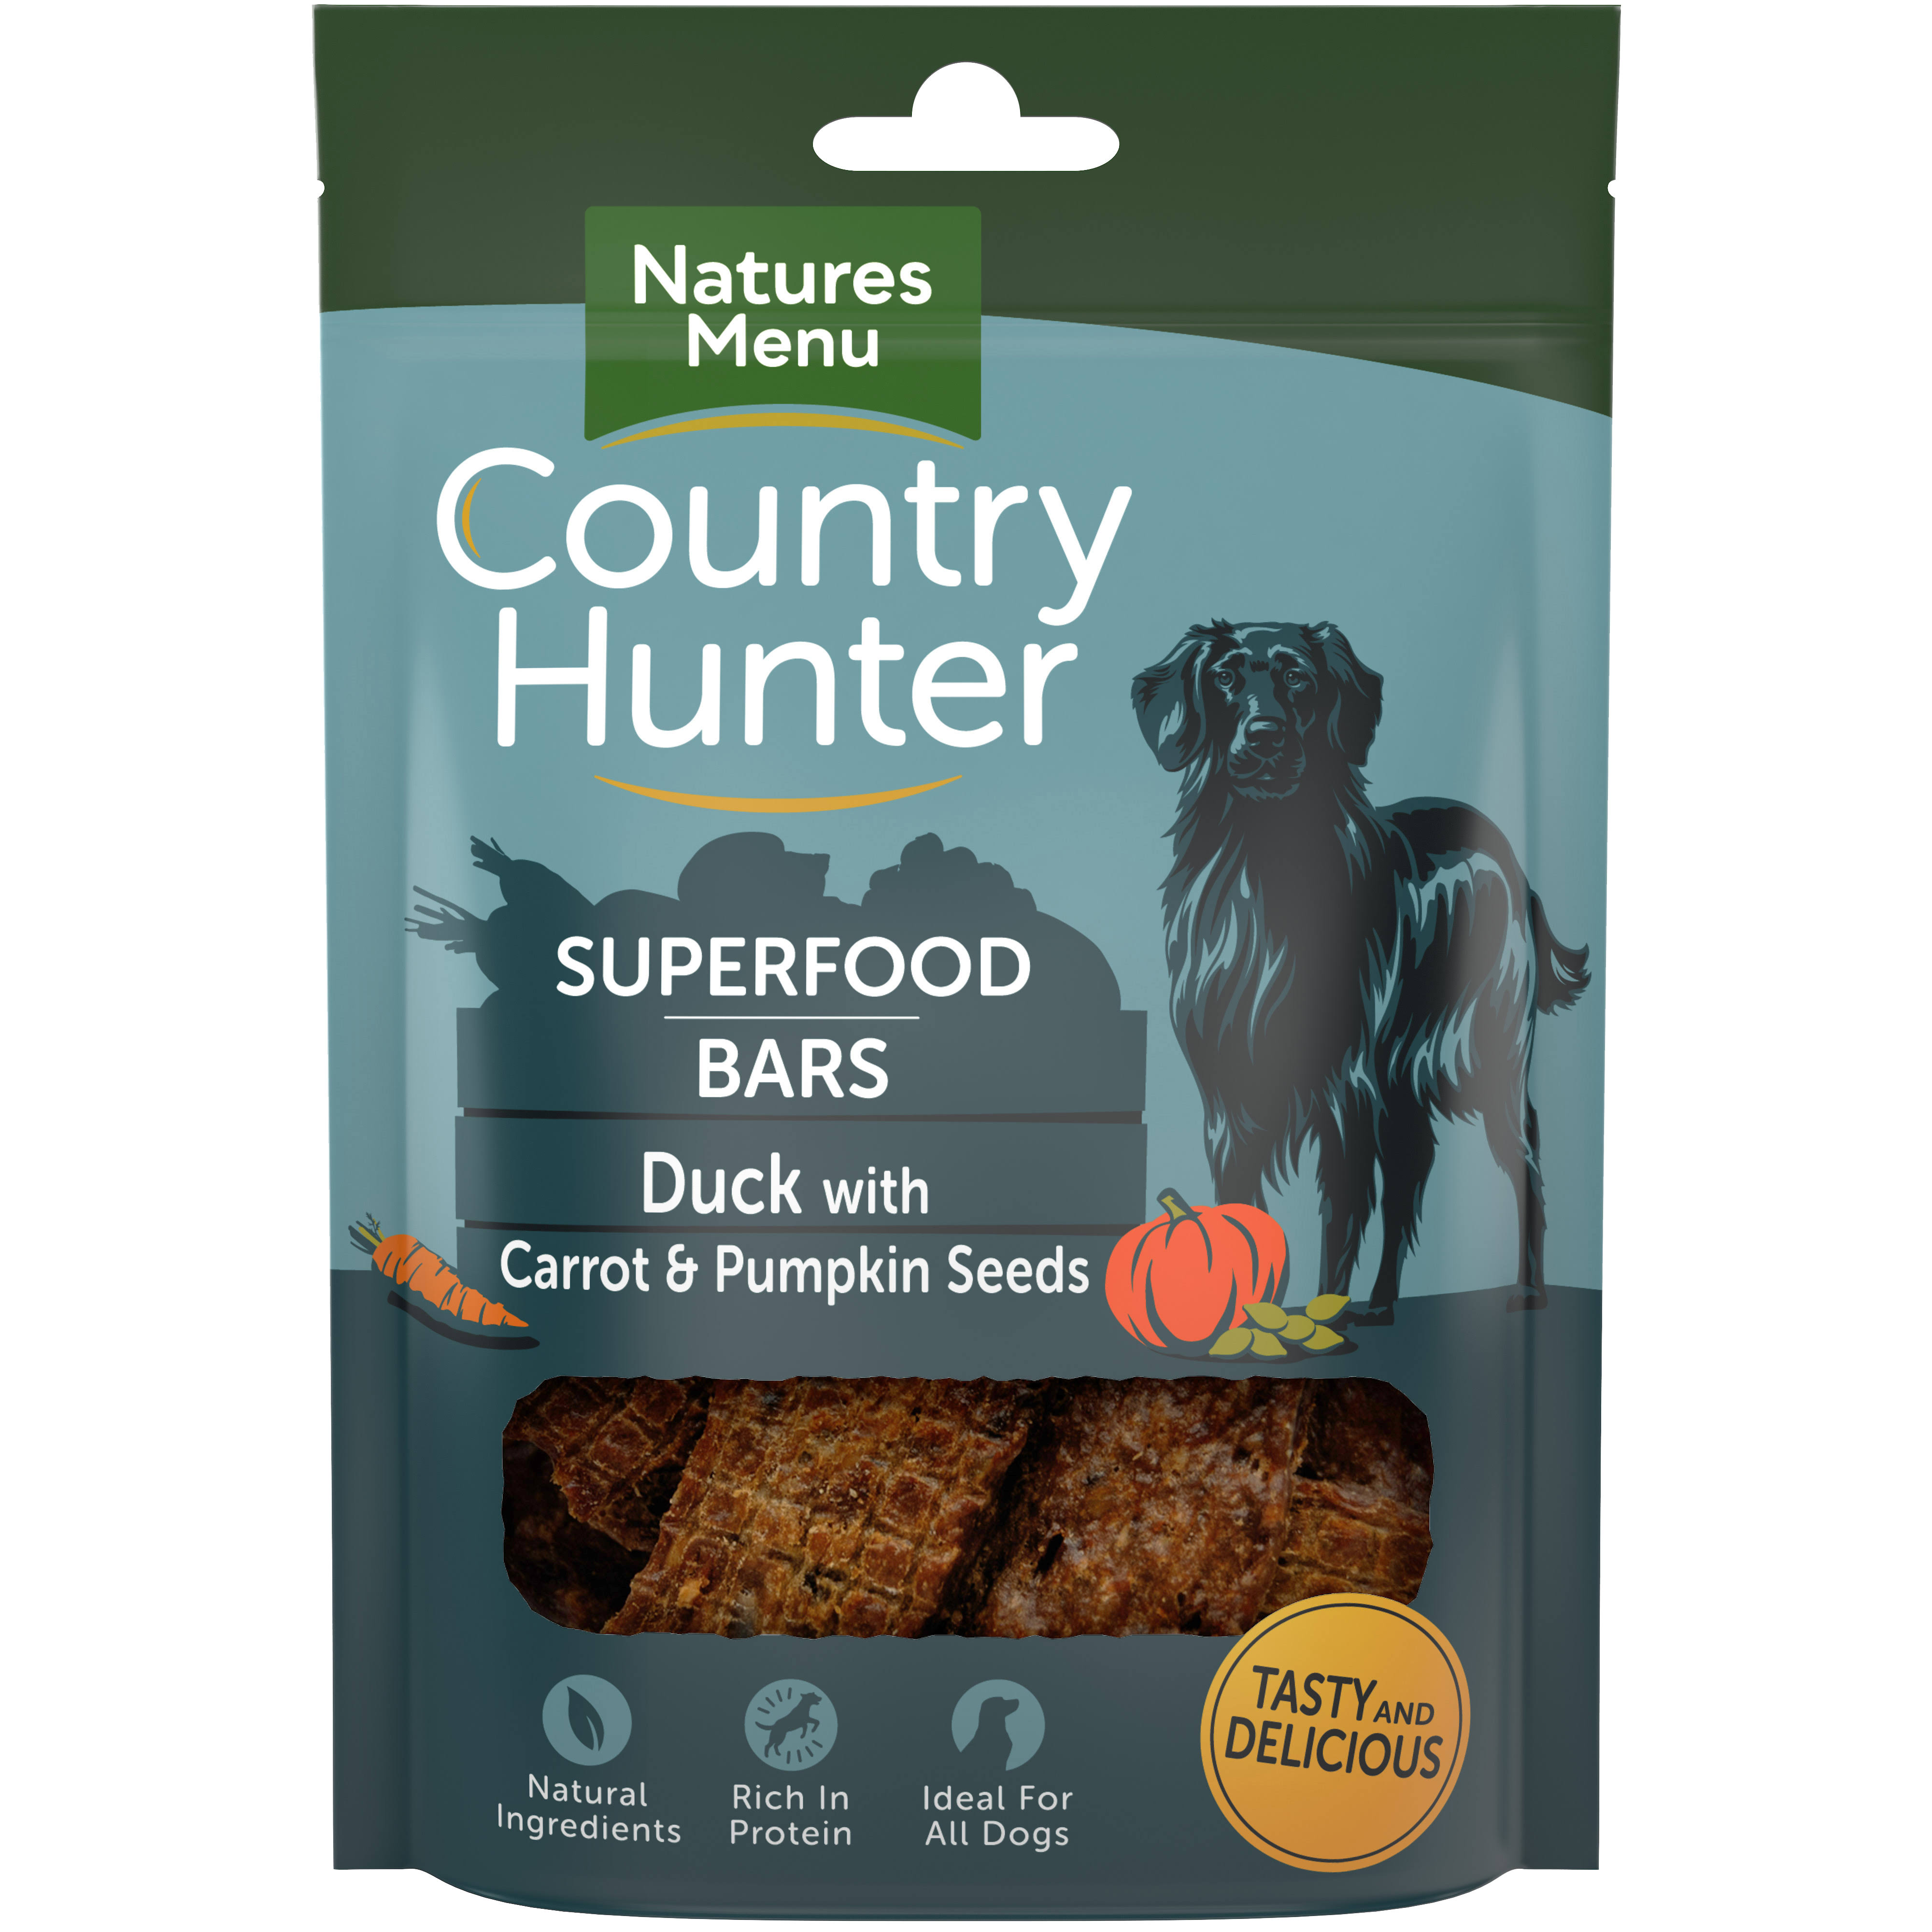 Natures Menu Country Hunter Dog Superfood Bar Duck, Carrot & Pumpkin Seeds 100 gr